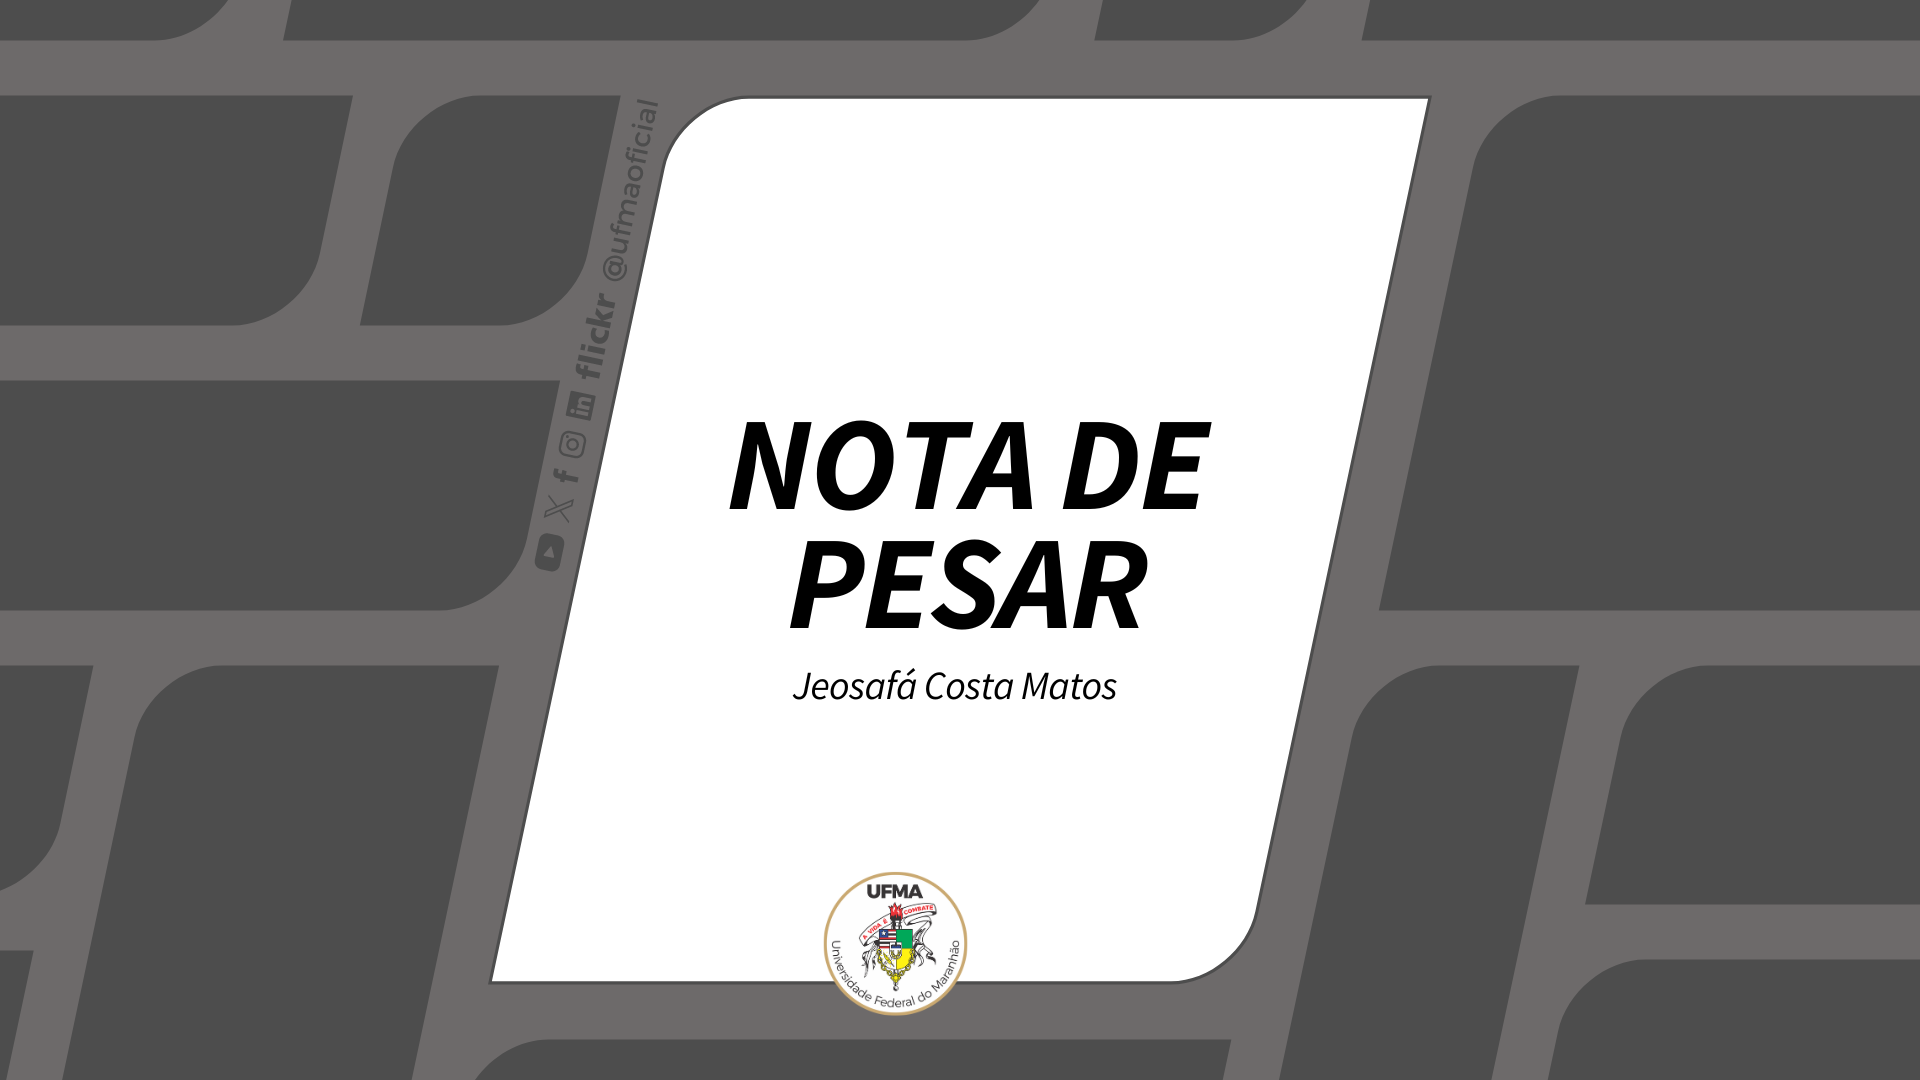 NOTA DE PESAR - Jeosafá Costa Matos